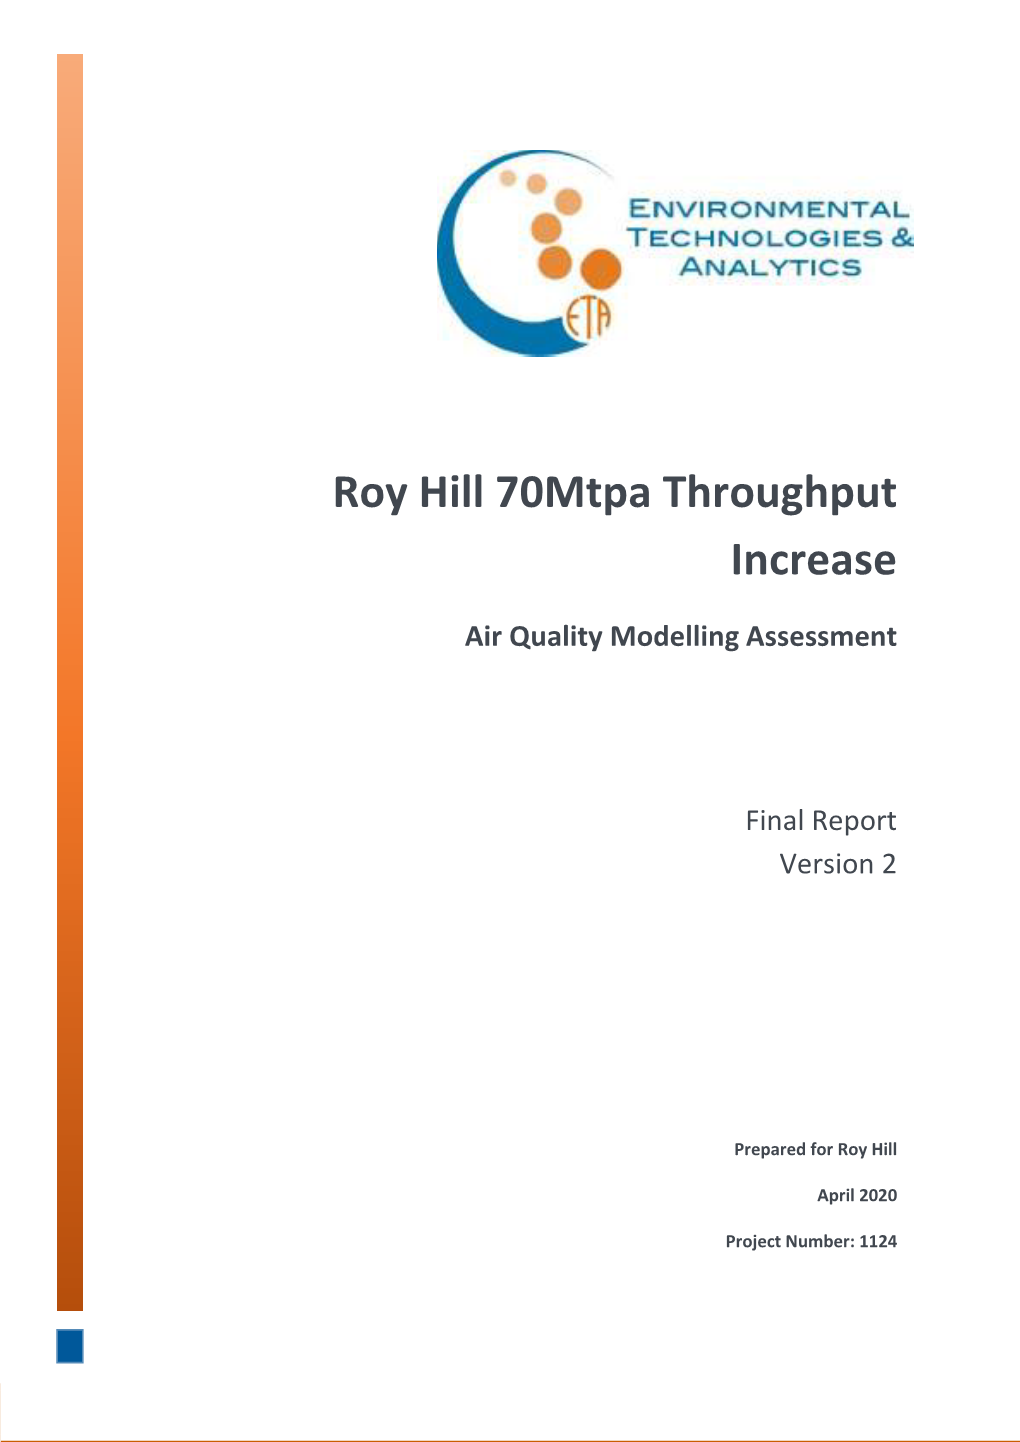 Roy Hill 70Mtpa Throughput Increase